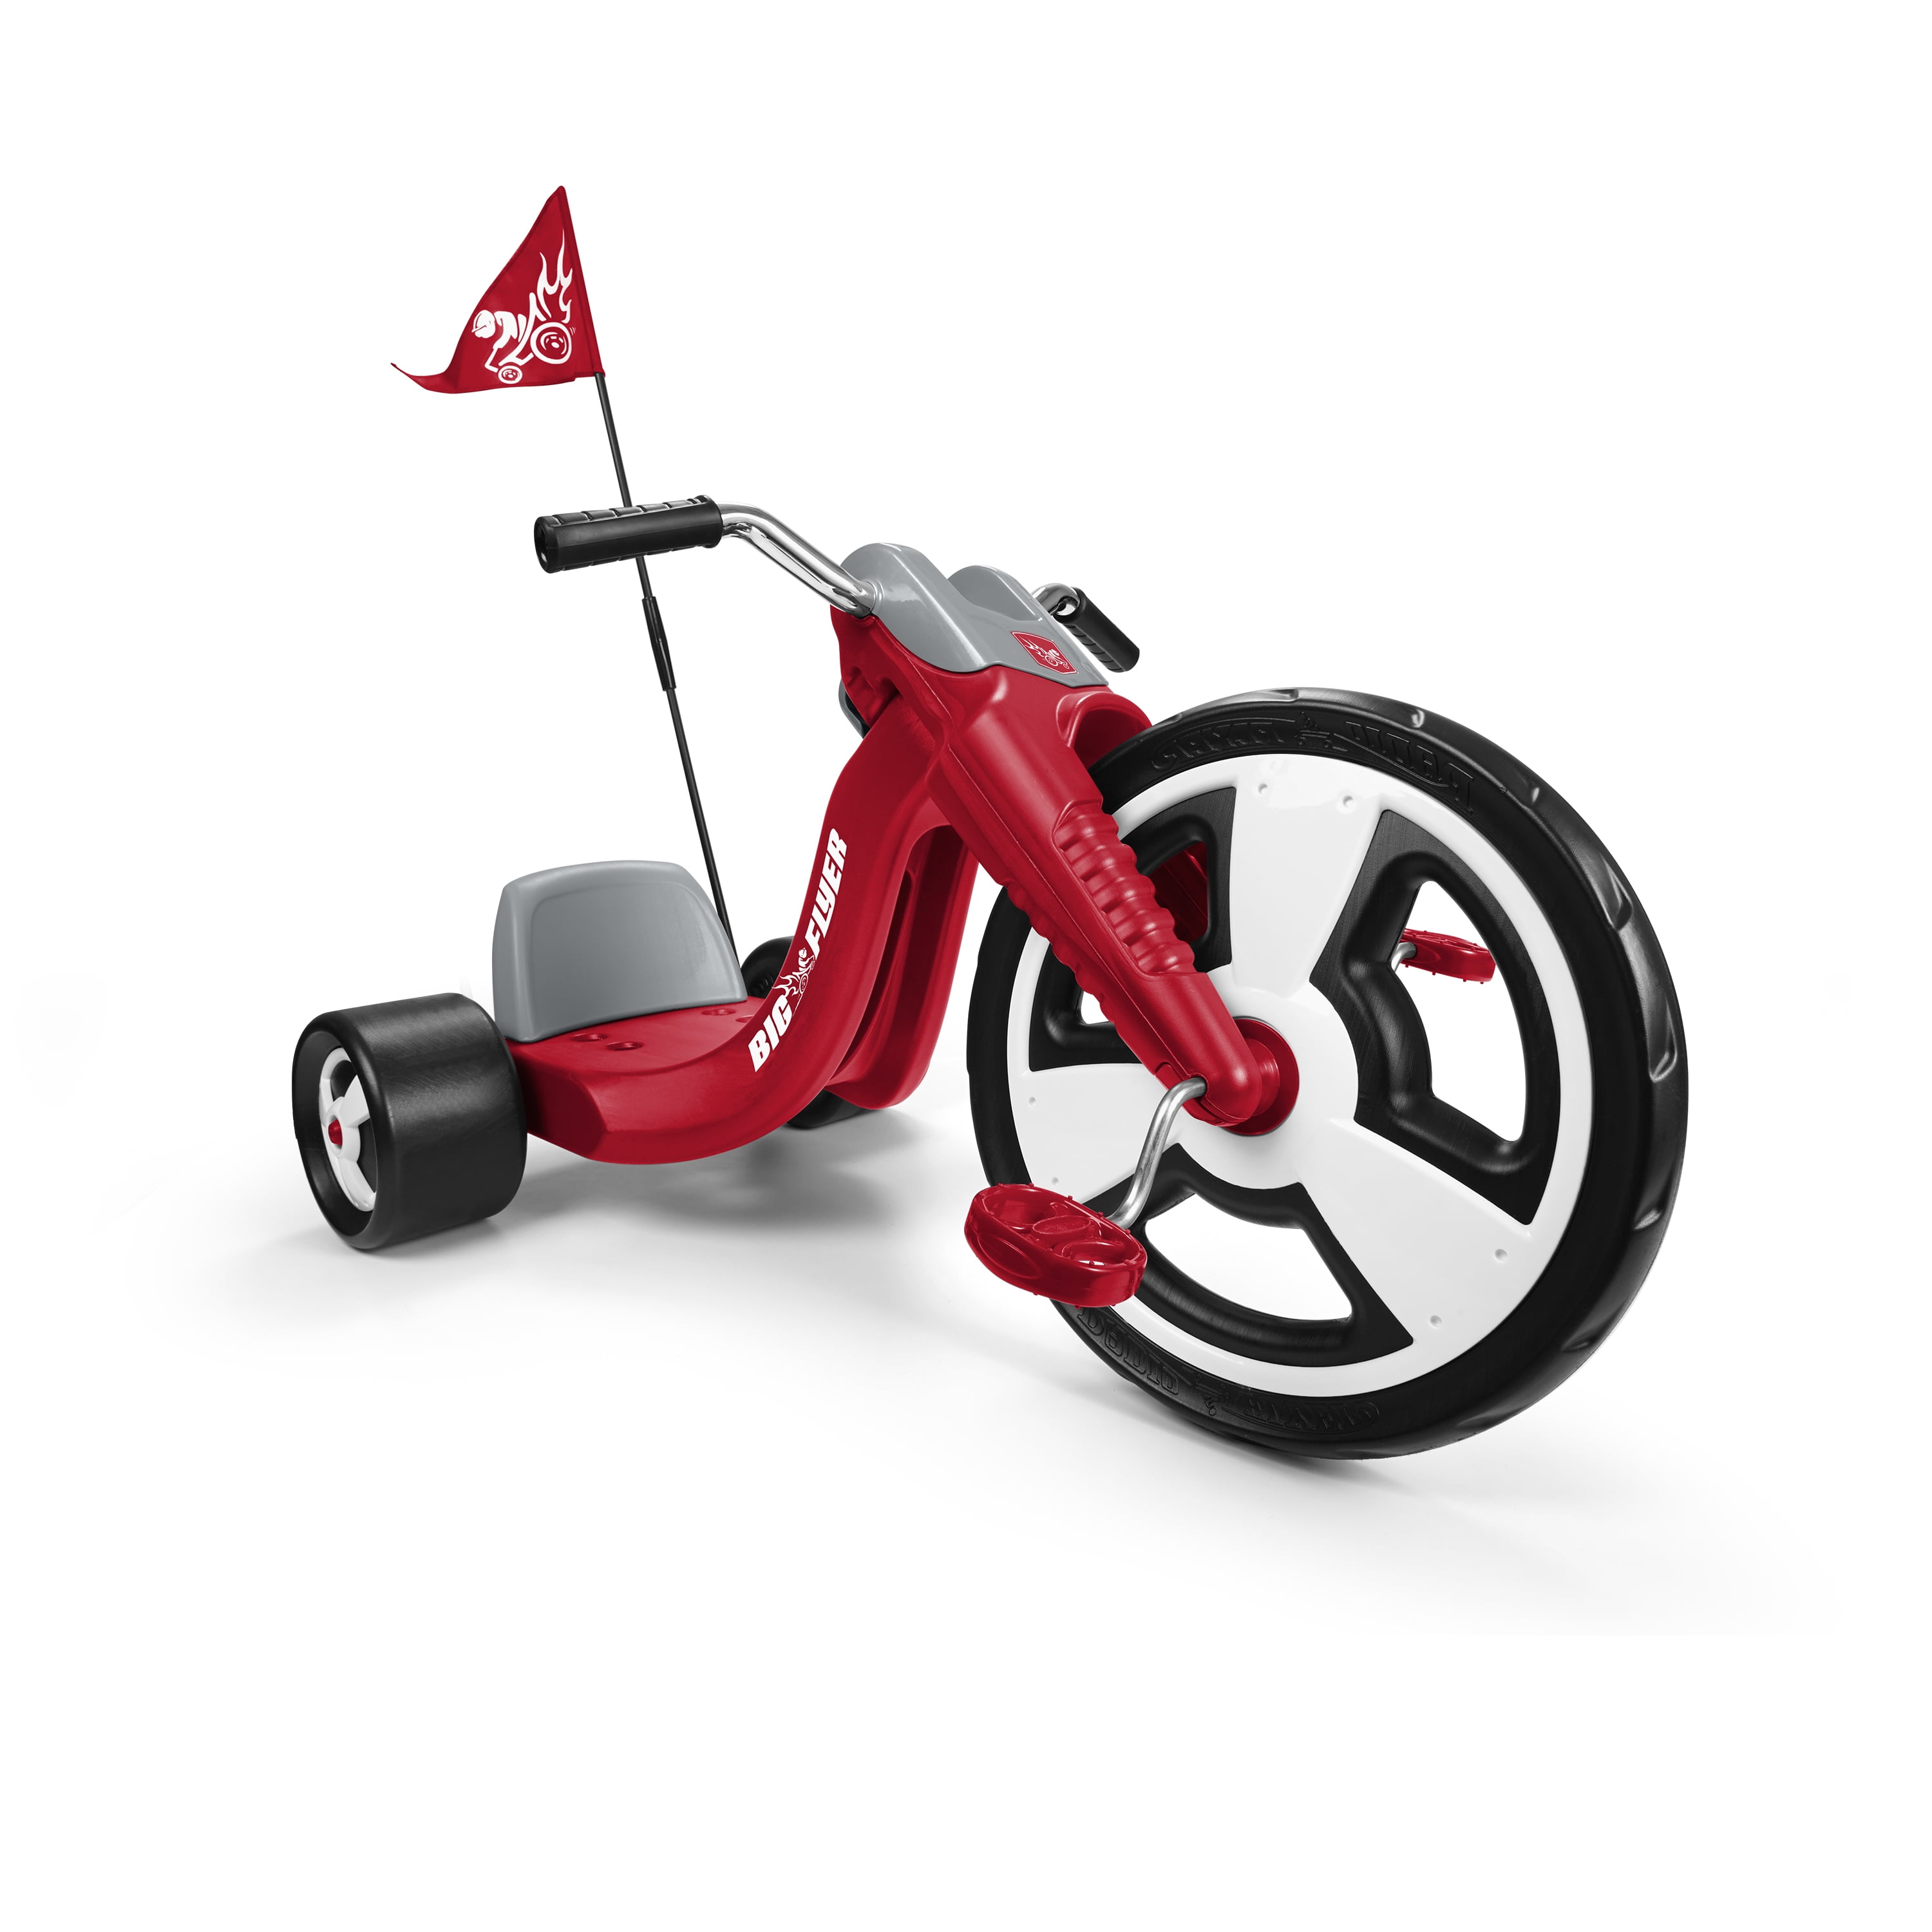 Razor Fun Sliding Children's Toy 360 Spins Kids Pink Trike With Caster Wheels 